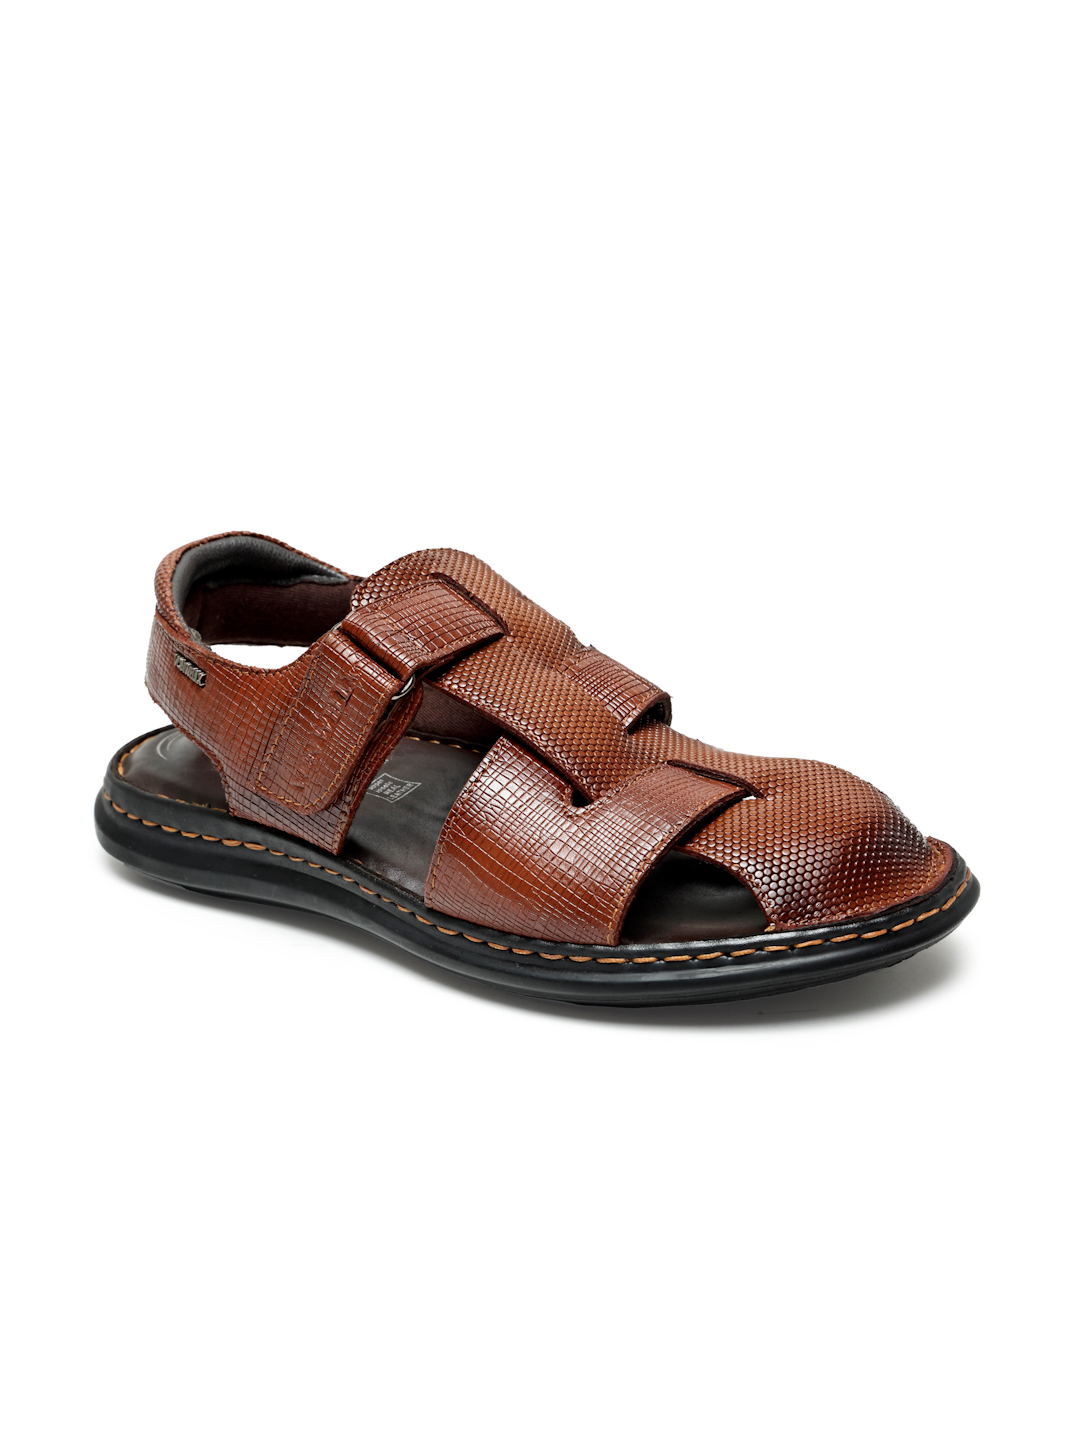 Buy Von Wellx Germany Comfort Men's Tan Sandals Morgen Online in Kochi